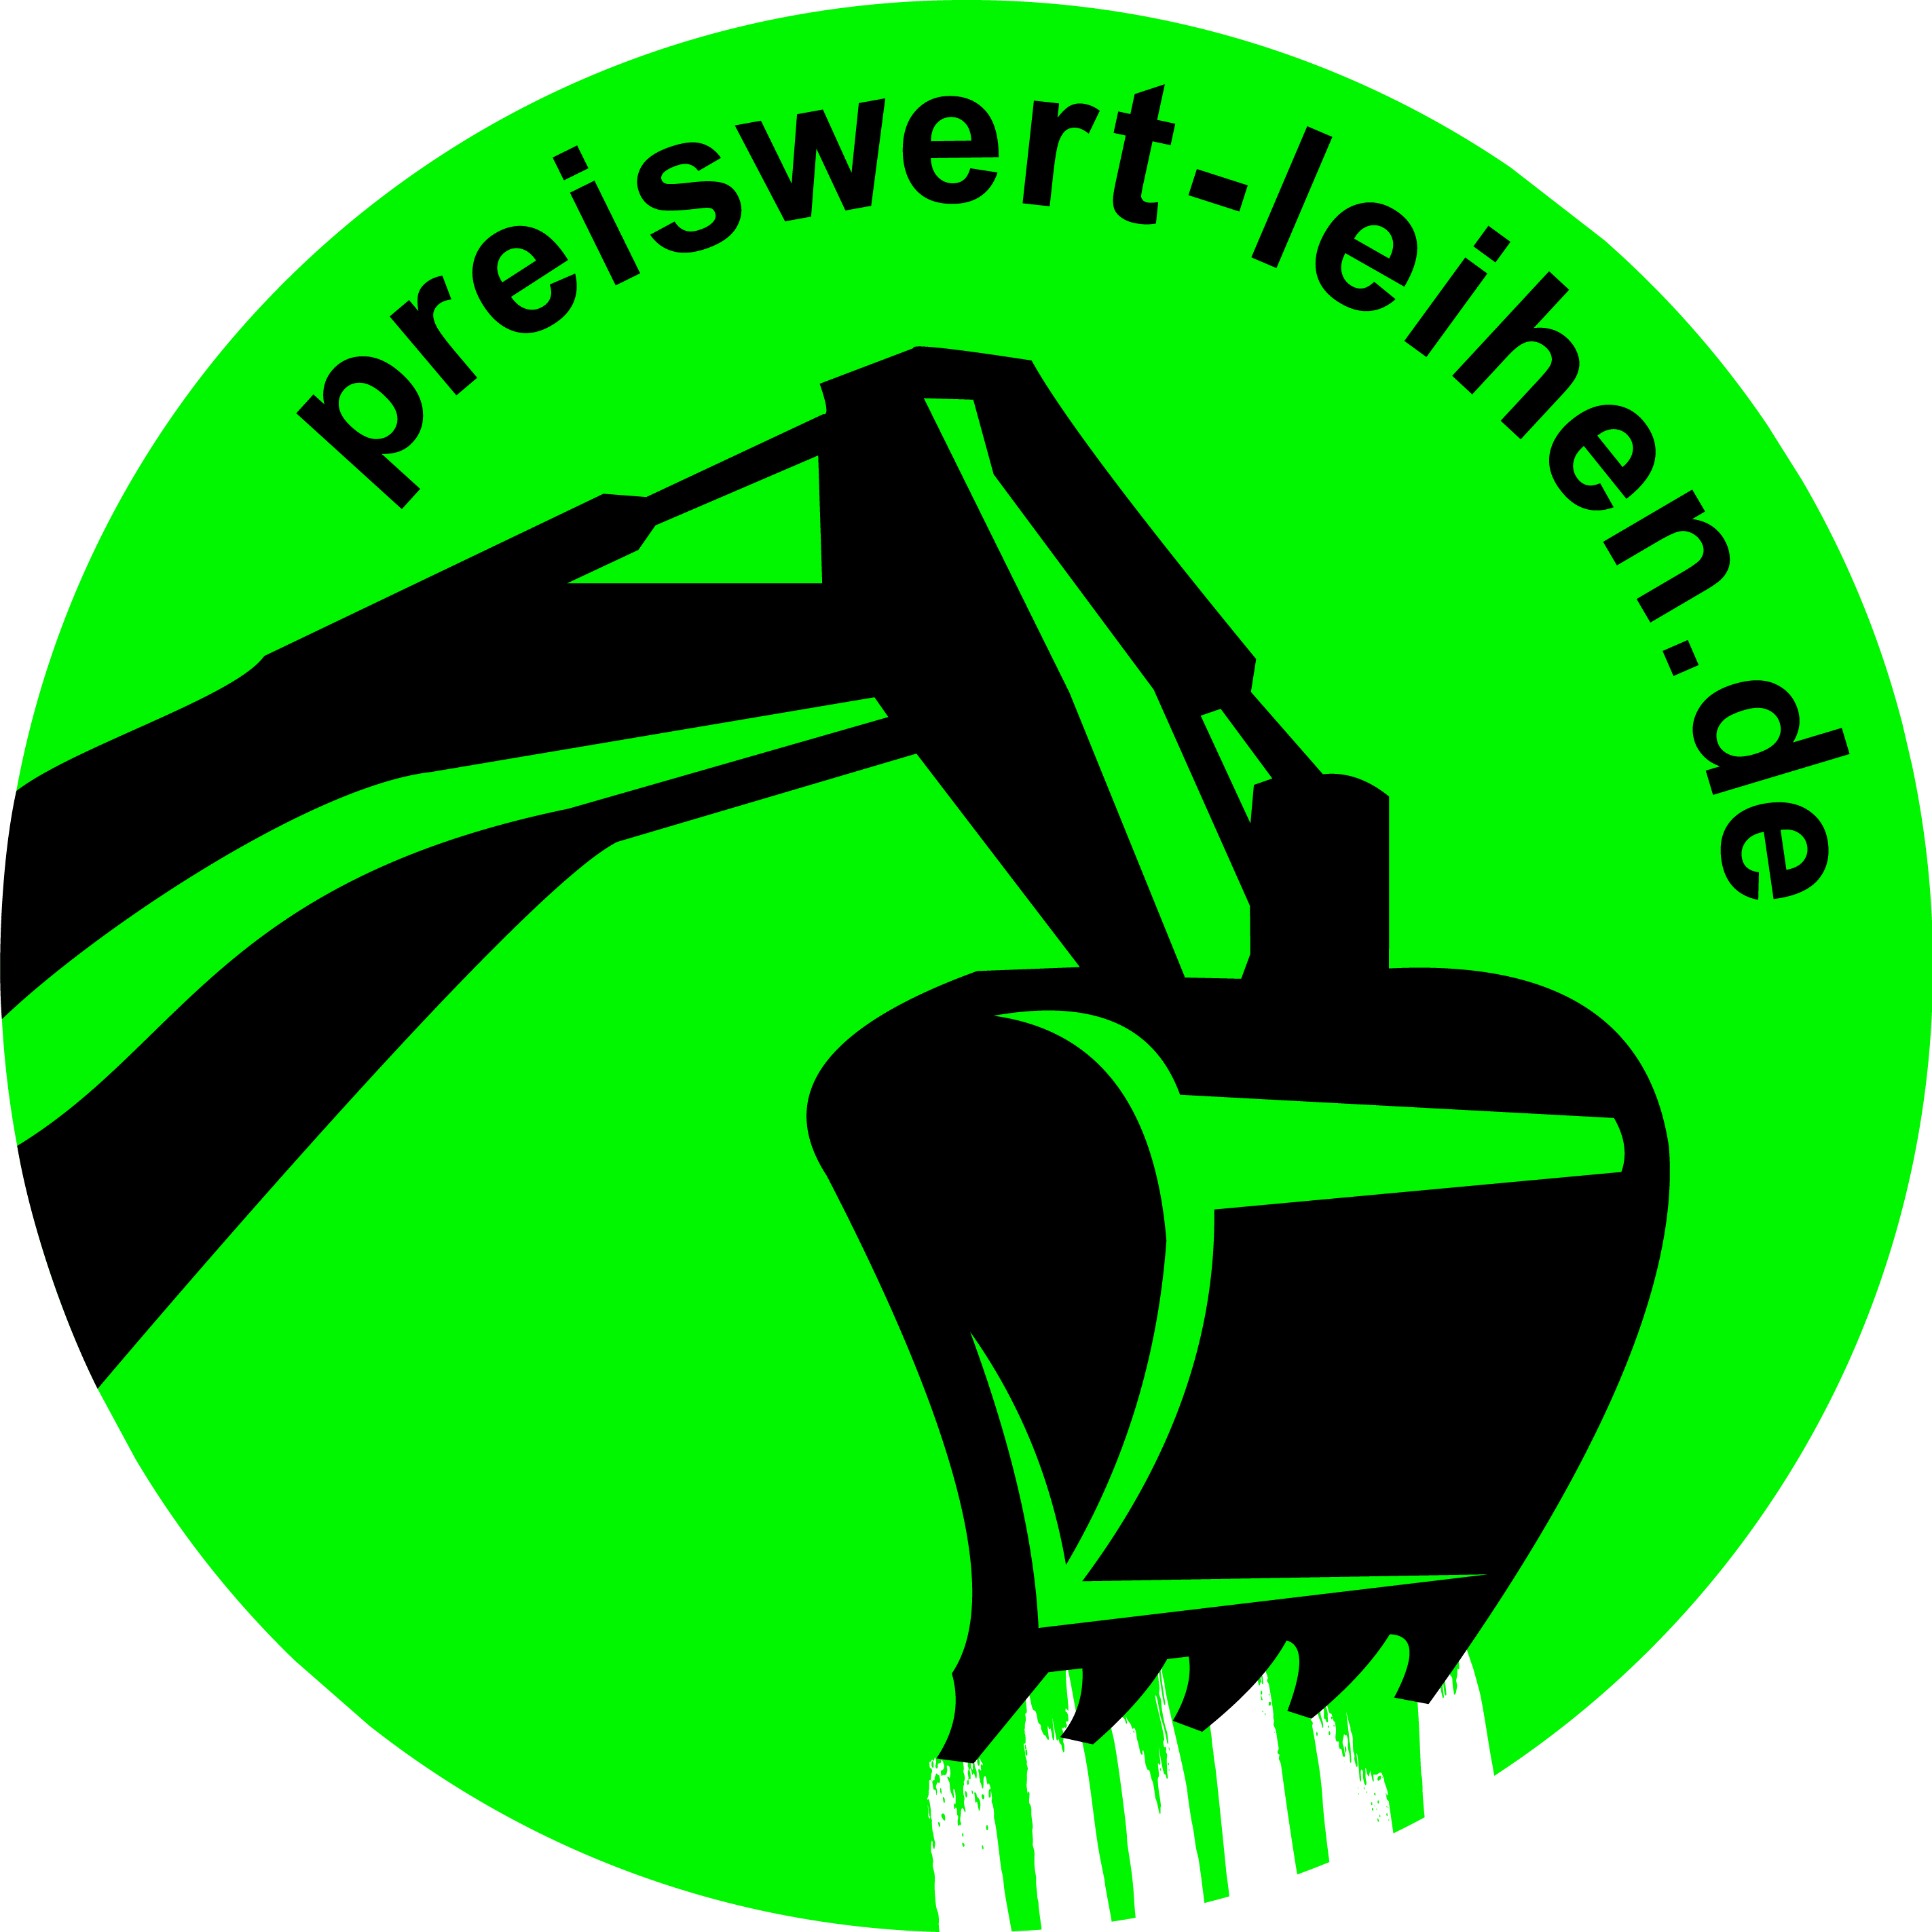 www.preiswert-leihen.de